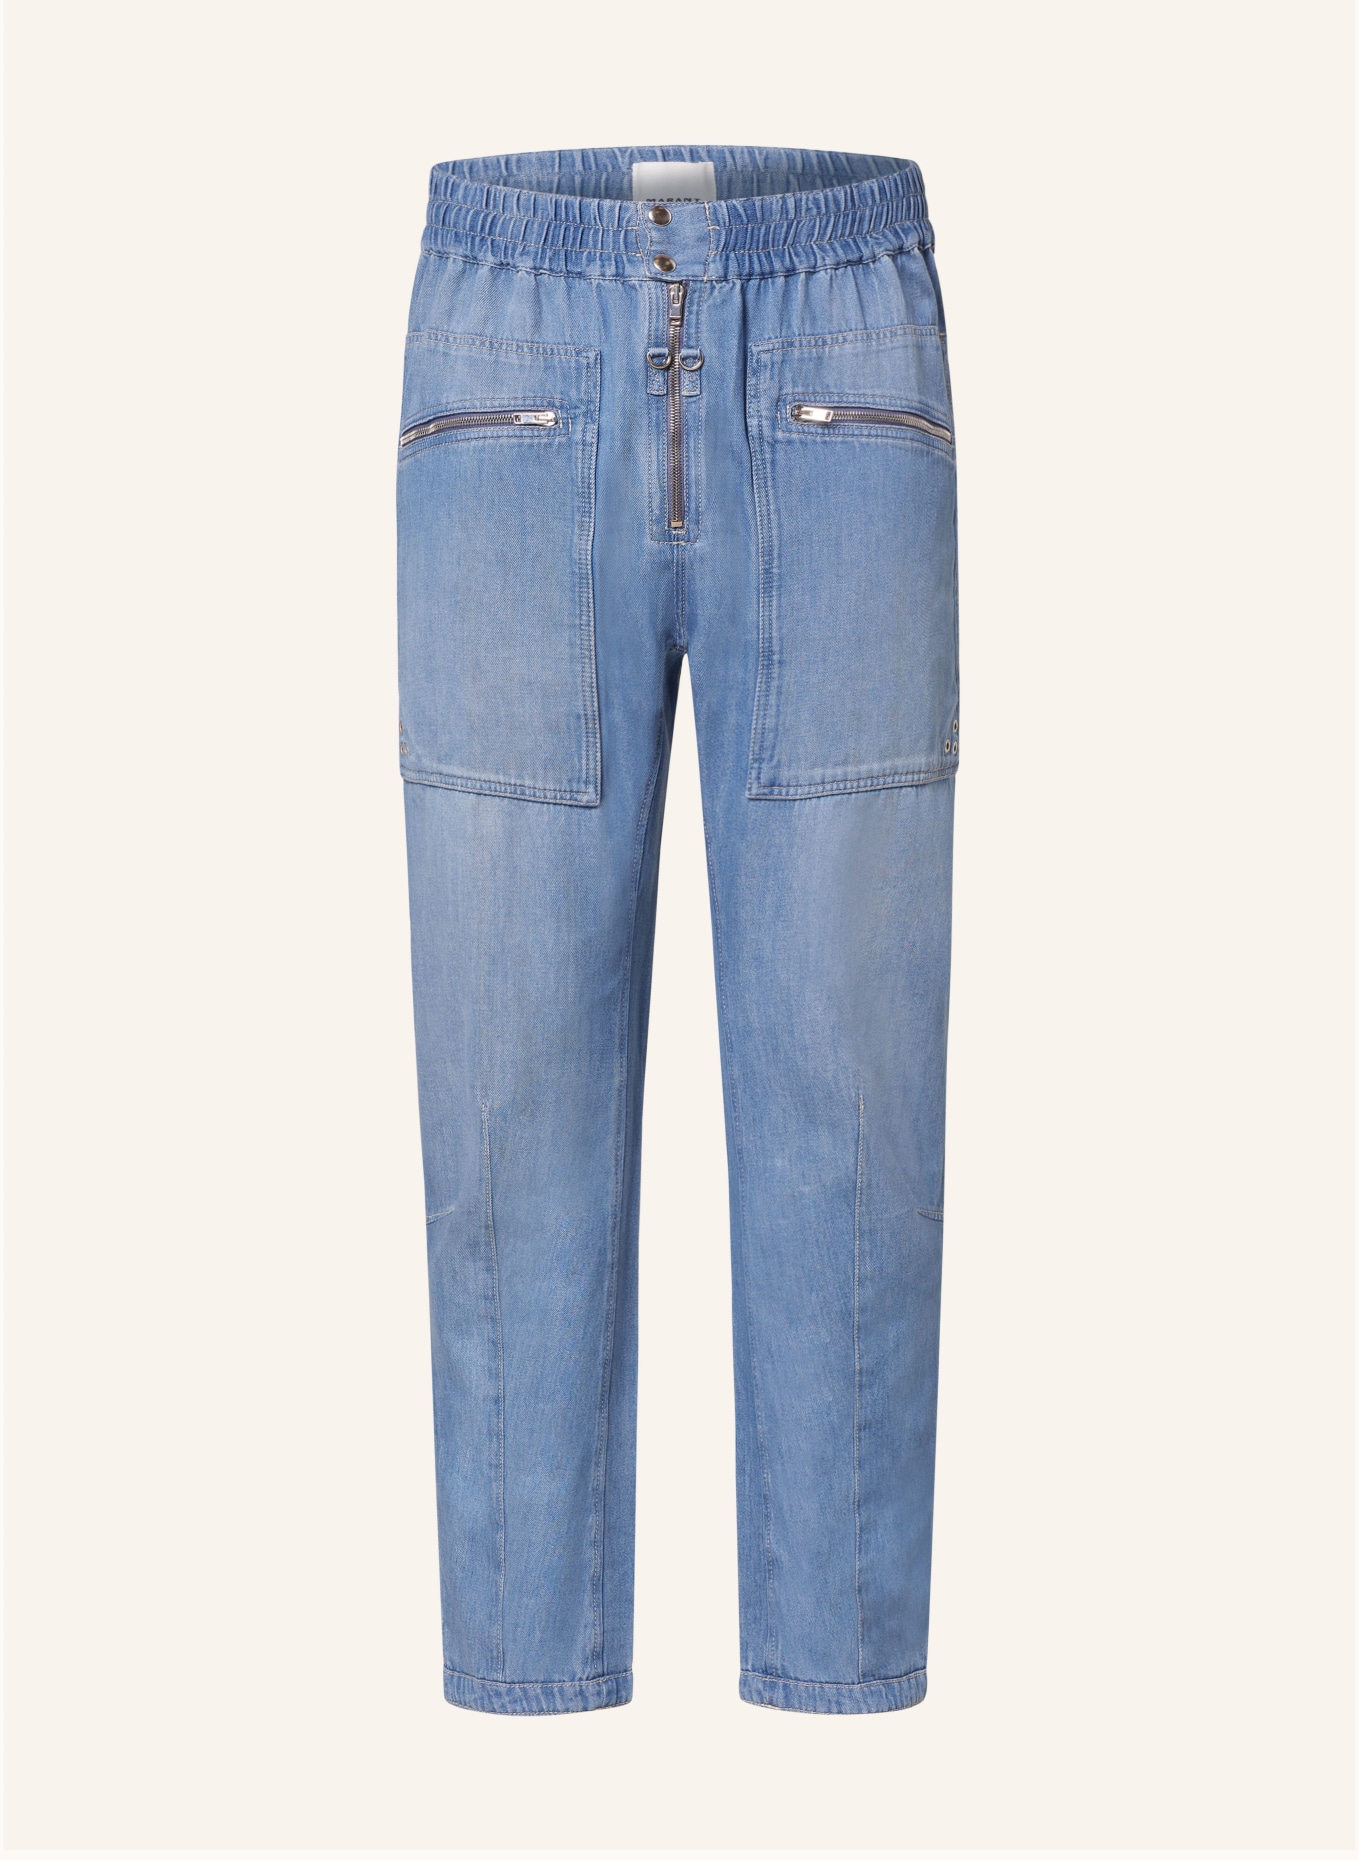 ISABEL MARANT Jeans JELSON regular fit, Color: 30BU blue (Image 1)